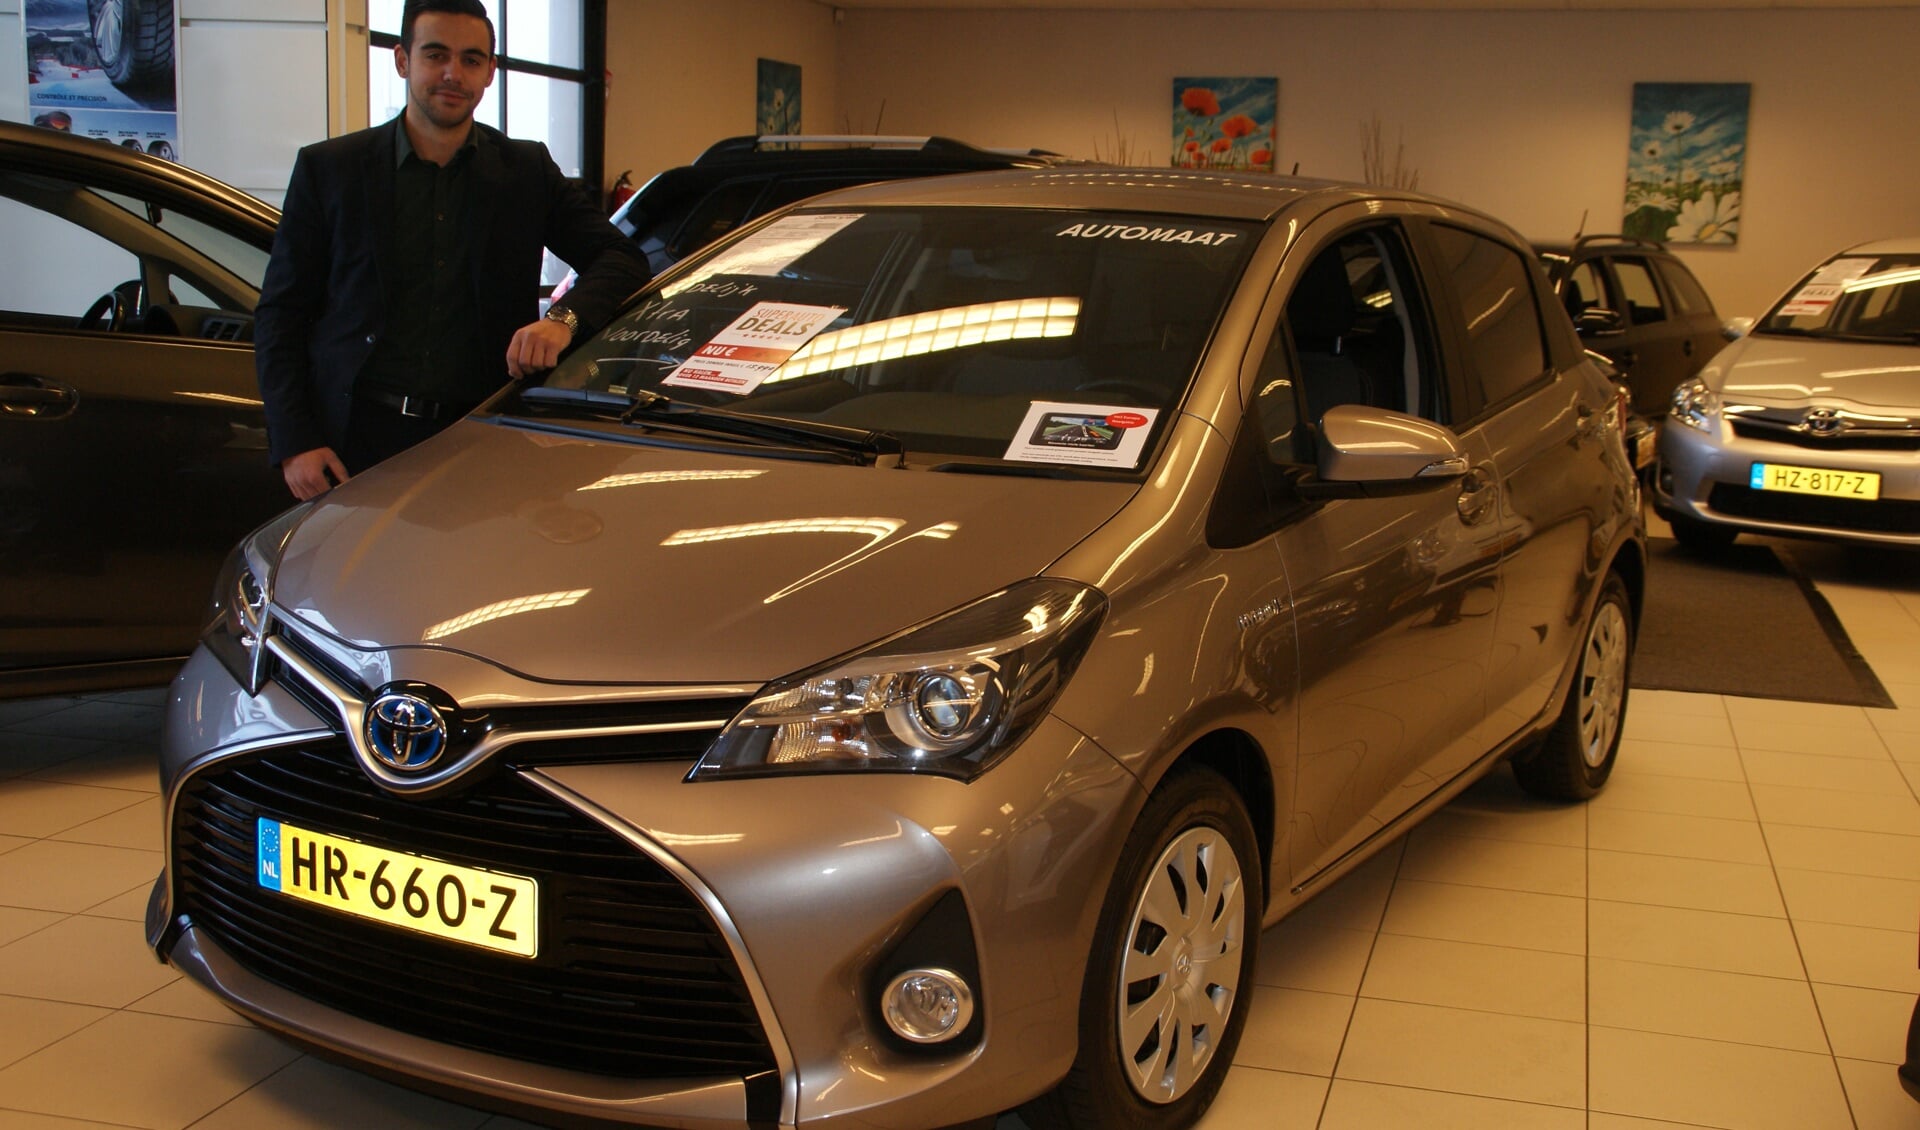 Verkoopmedewerker Mitchel Roos van Vakgarage DIGO bij de Toyota Yaris waar een Super-Auto-Deal voor geldt.